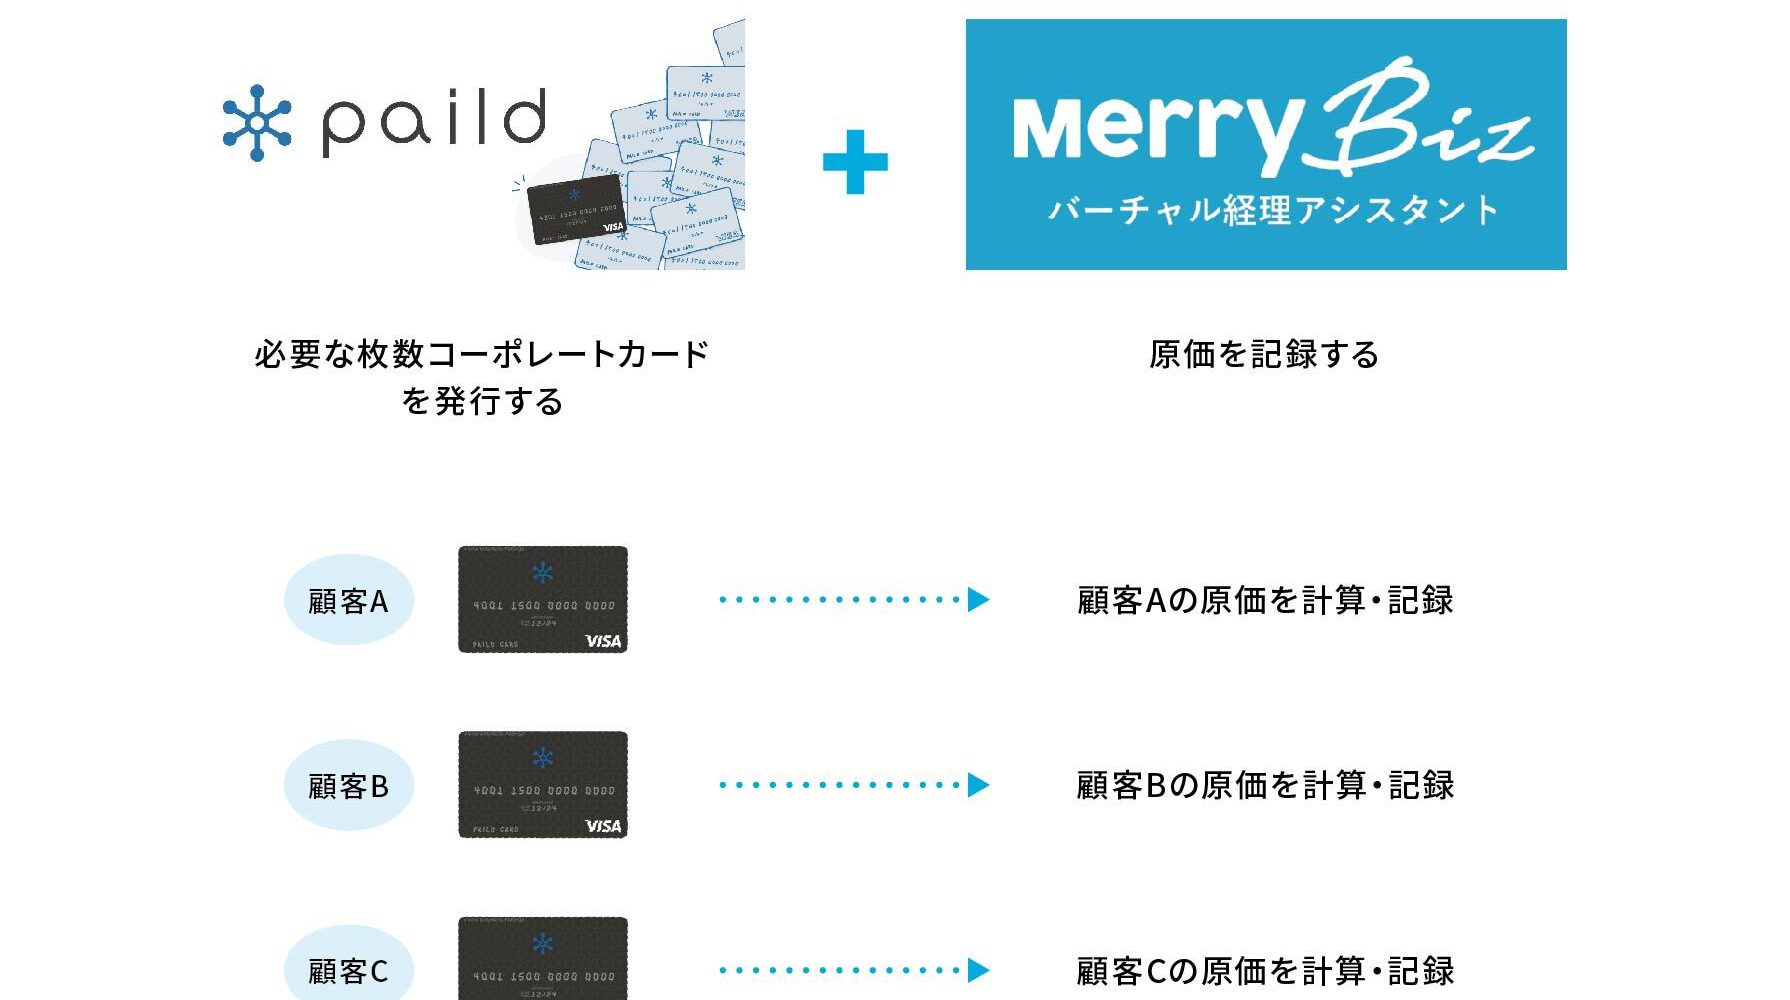 メリービズ、法人カード発行サービス「paild」を活用した、新しい「原価計算ソリューション」を提供 顧客別